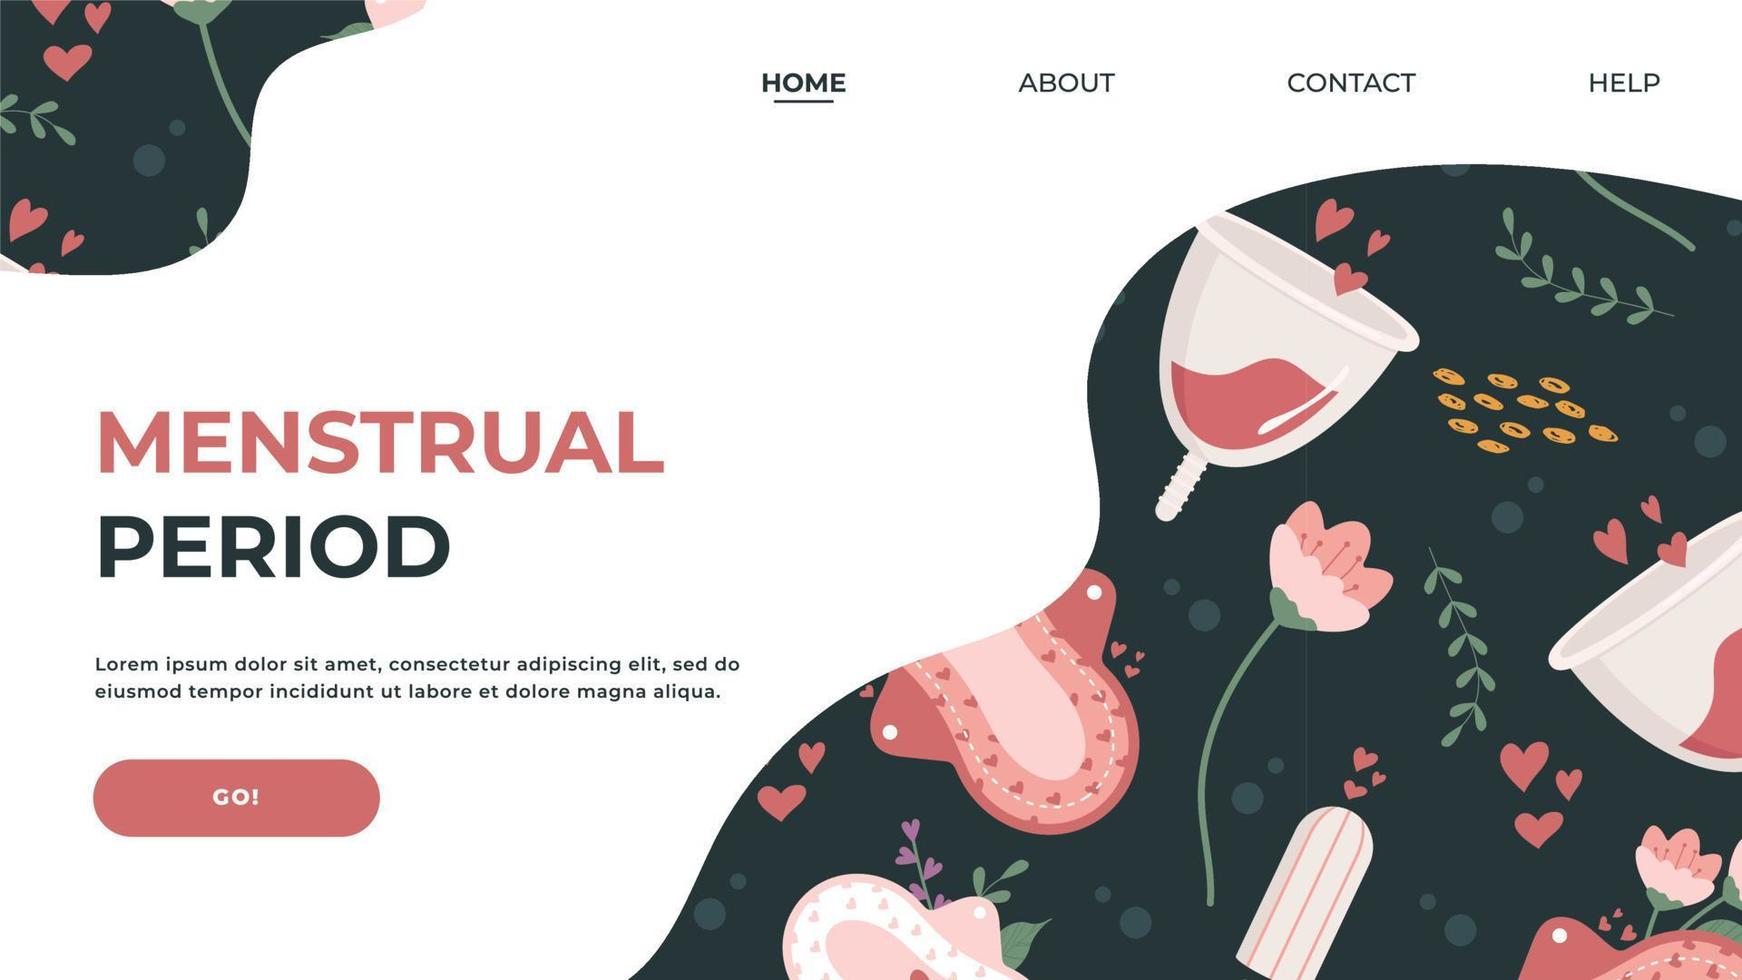 webbplatsens målsida på ämnet kvinnlig reproduktiv hälsa, hygien, menstruation med bilder av bindor, tamponger. platt vektorillustration. hälsokoncept för banner, webbdesign eller målsida vektor